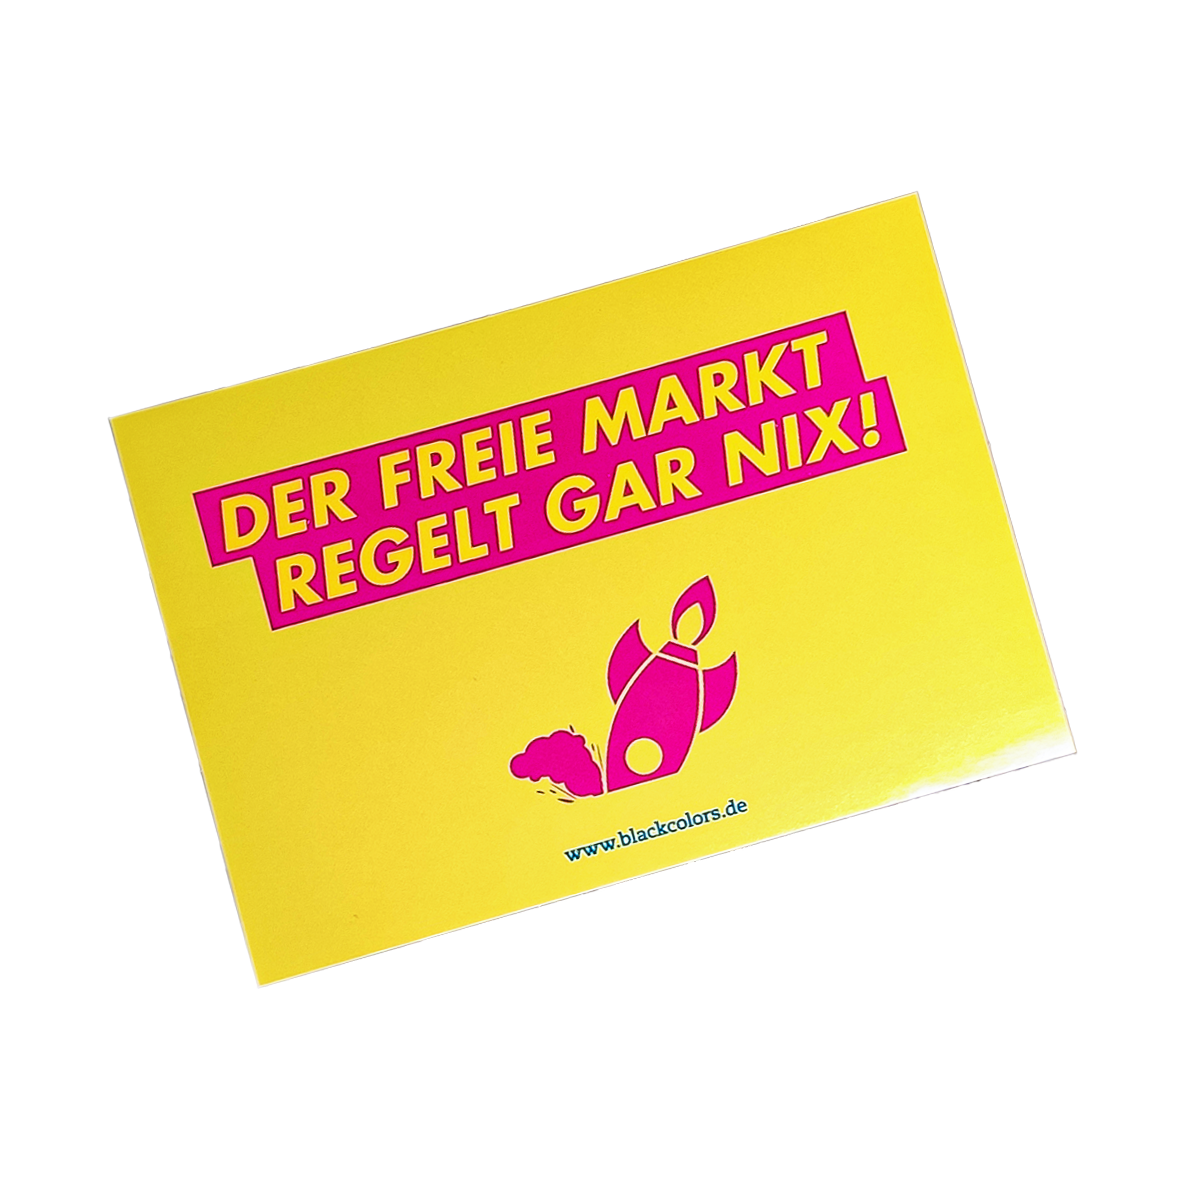 "DER FREIE MARKT REGELT GAR NIX!" - Sticker